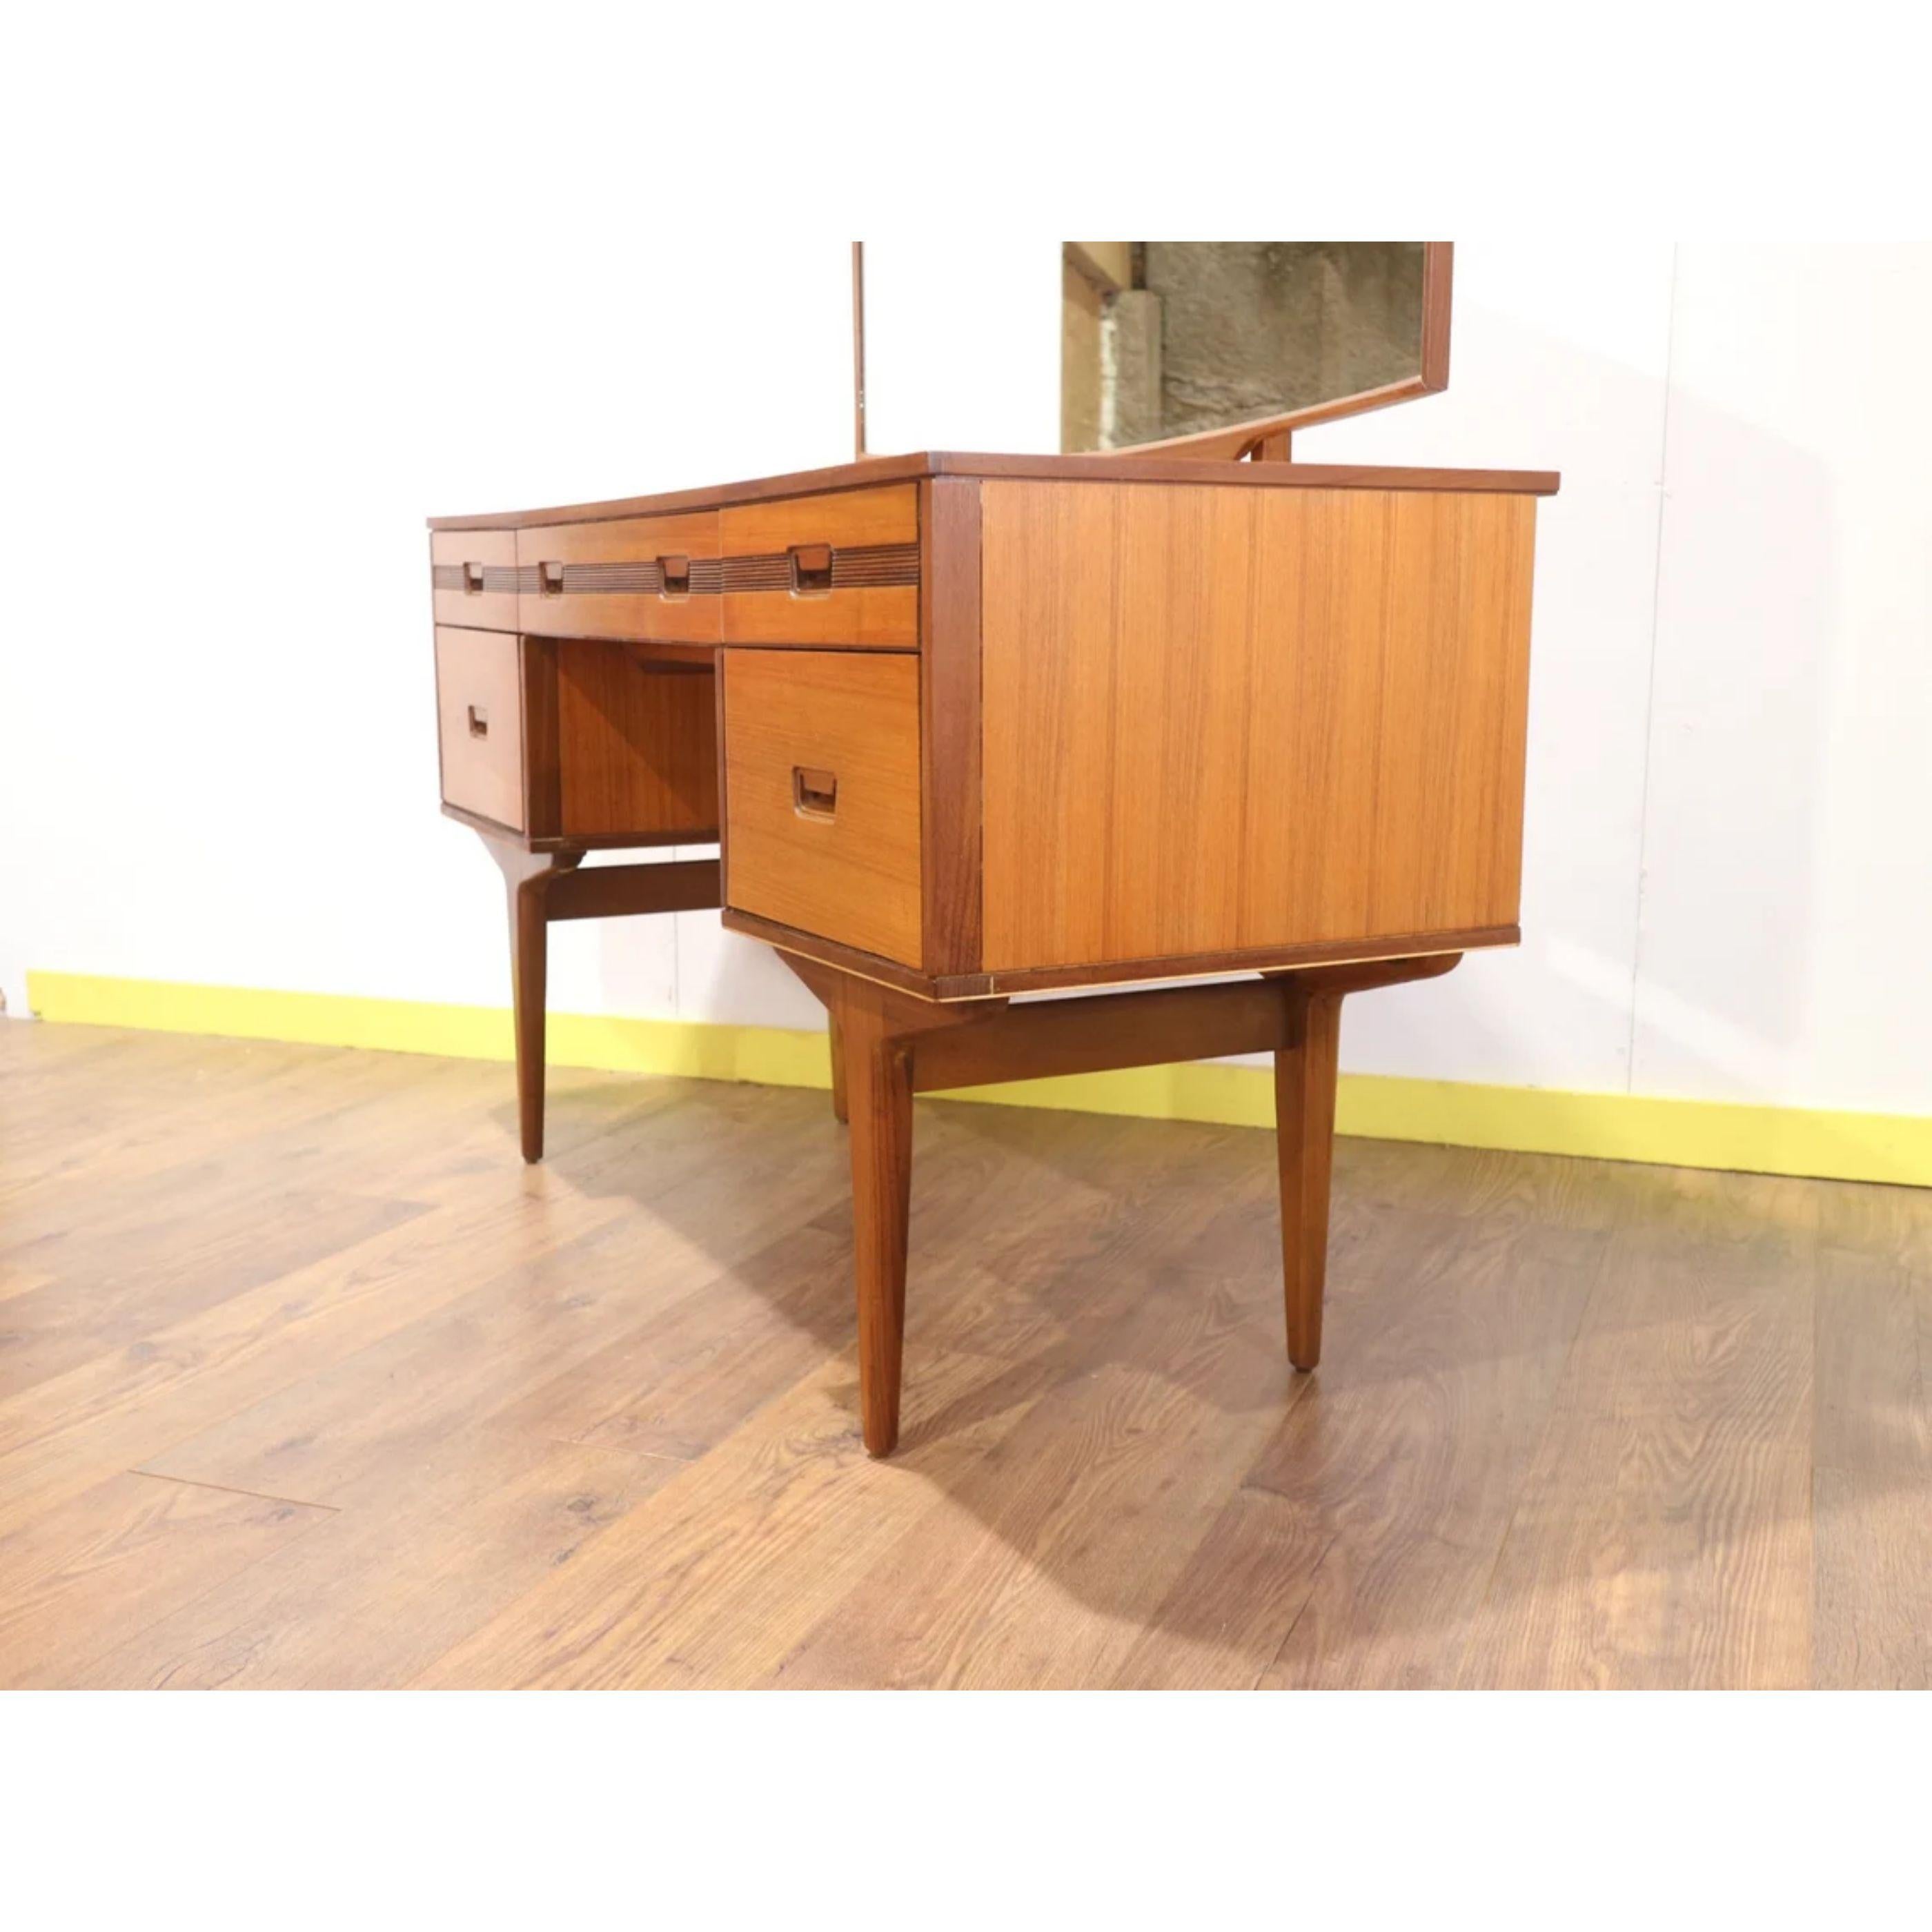 20th Century Mid Century Modern Vintage Teak Vanity Desk by Butilux Danish G Plan British